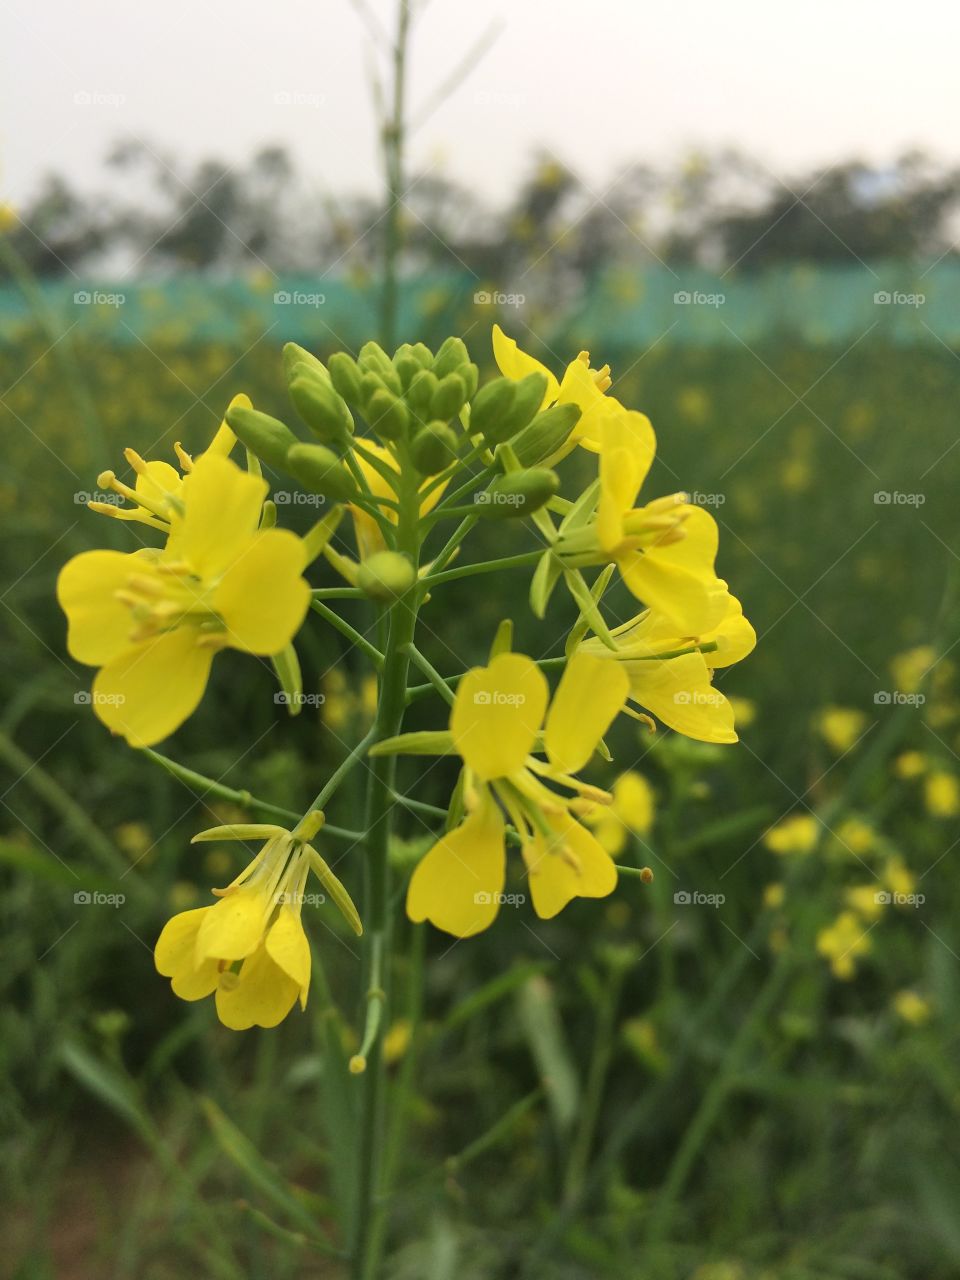 #flower #yellowsarso #sarsoflower